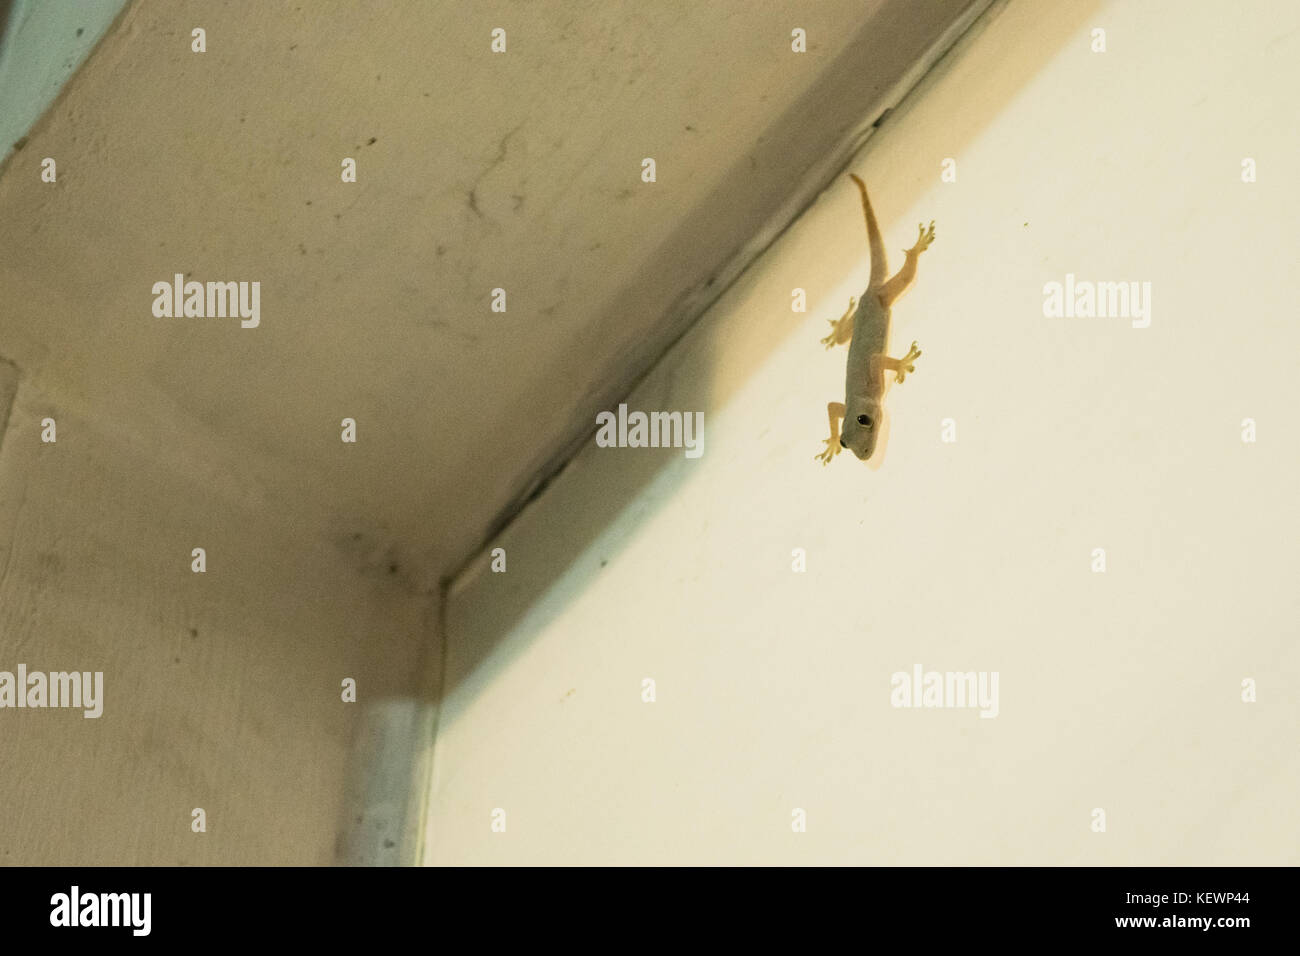 Asianreptile maison commune, gecko Hemidactylus frenatus, hanging on collé à un mur blanc d'une maison à Phnom Penh, Cambodge, Asie du Sud Est Banque D'Images